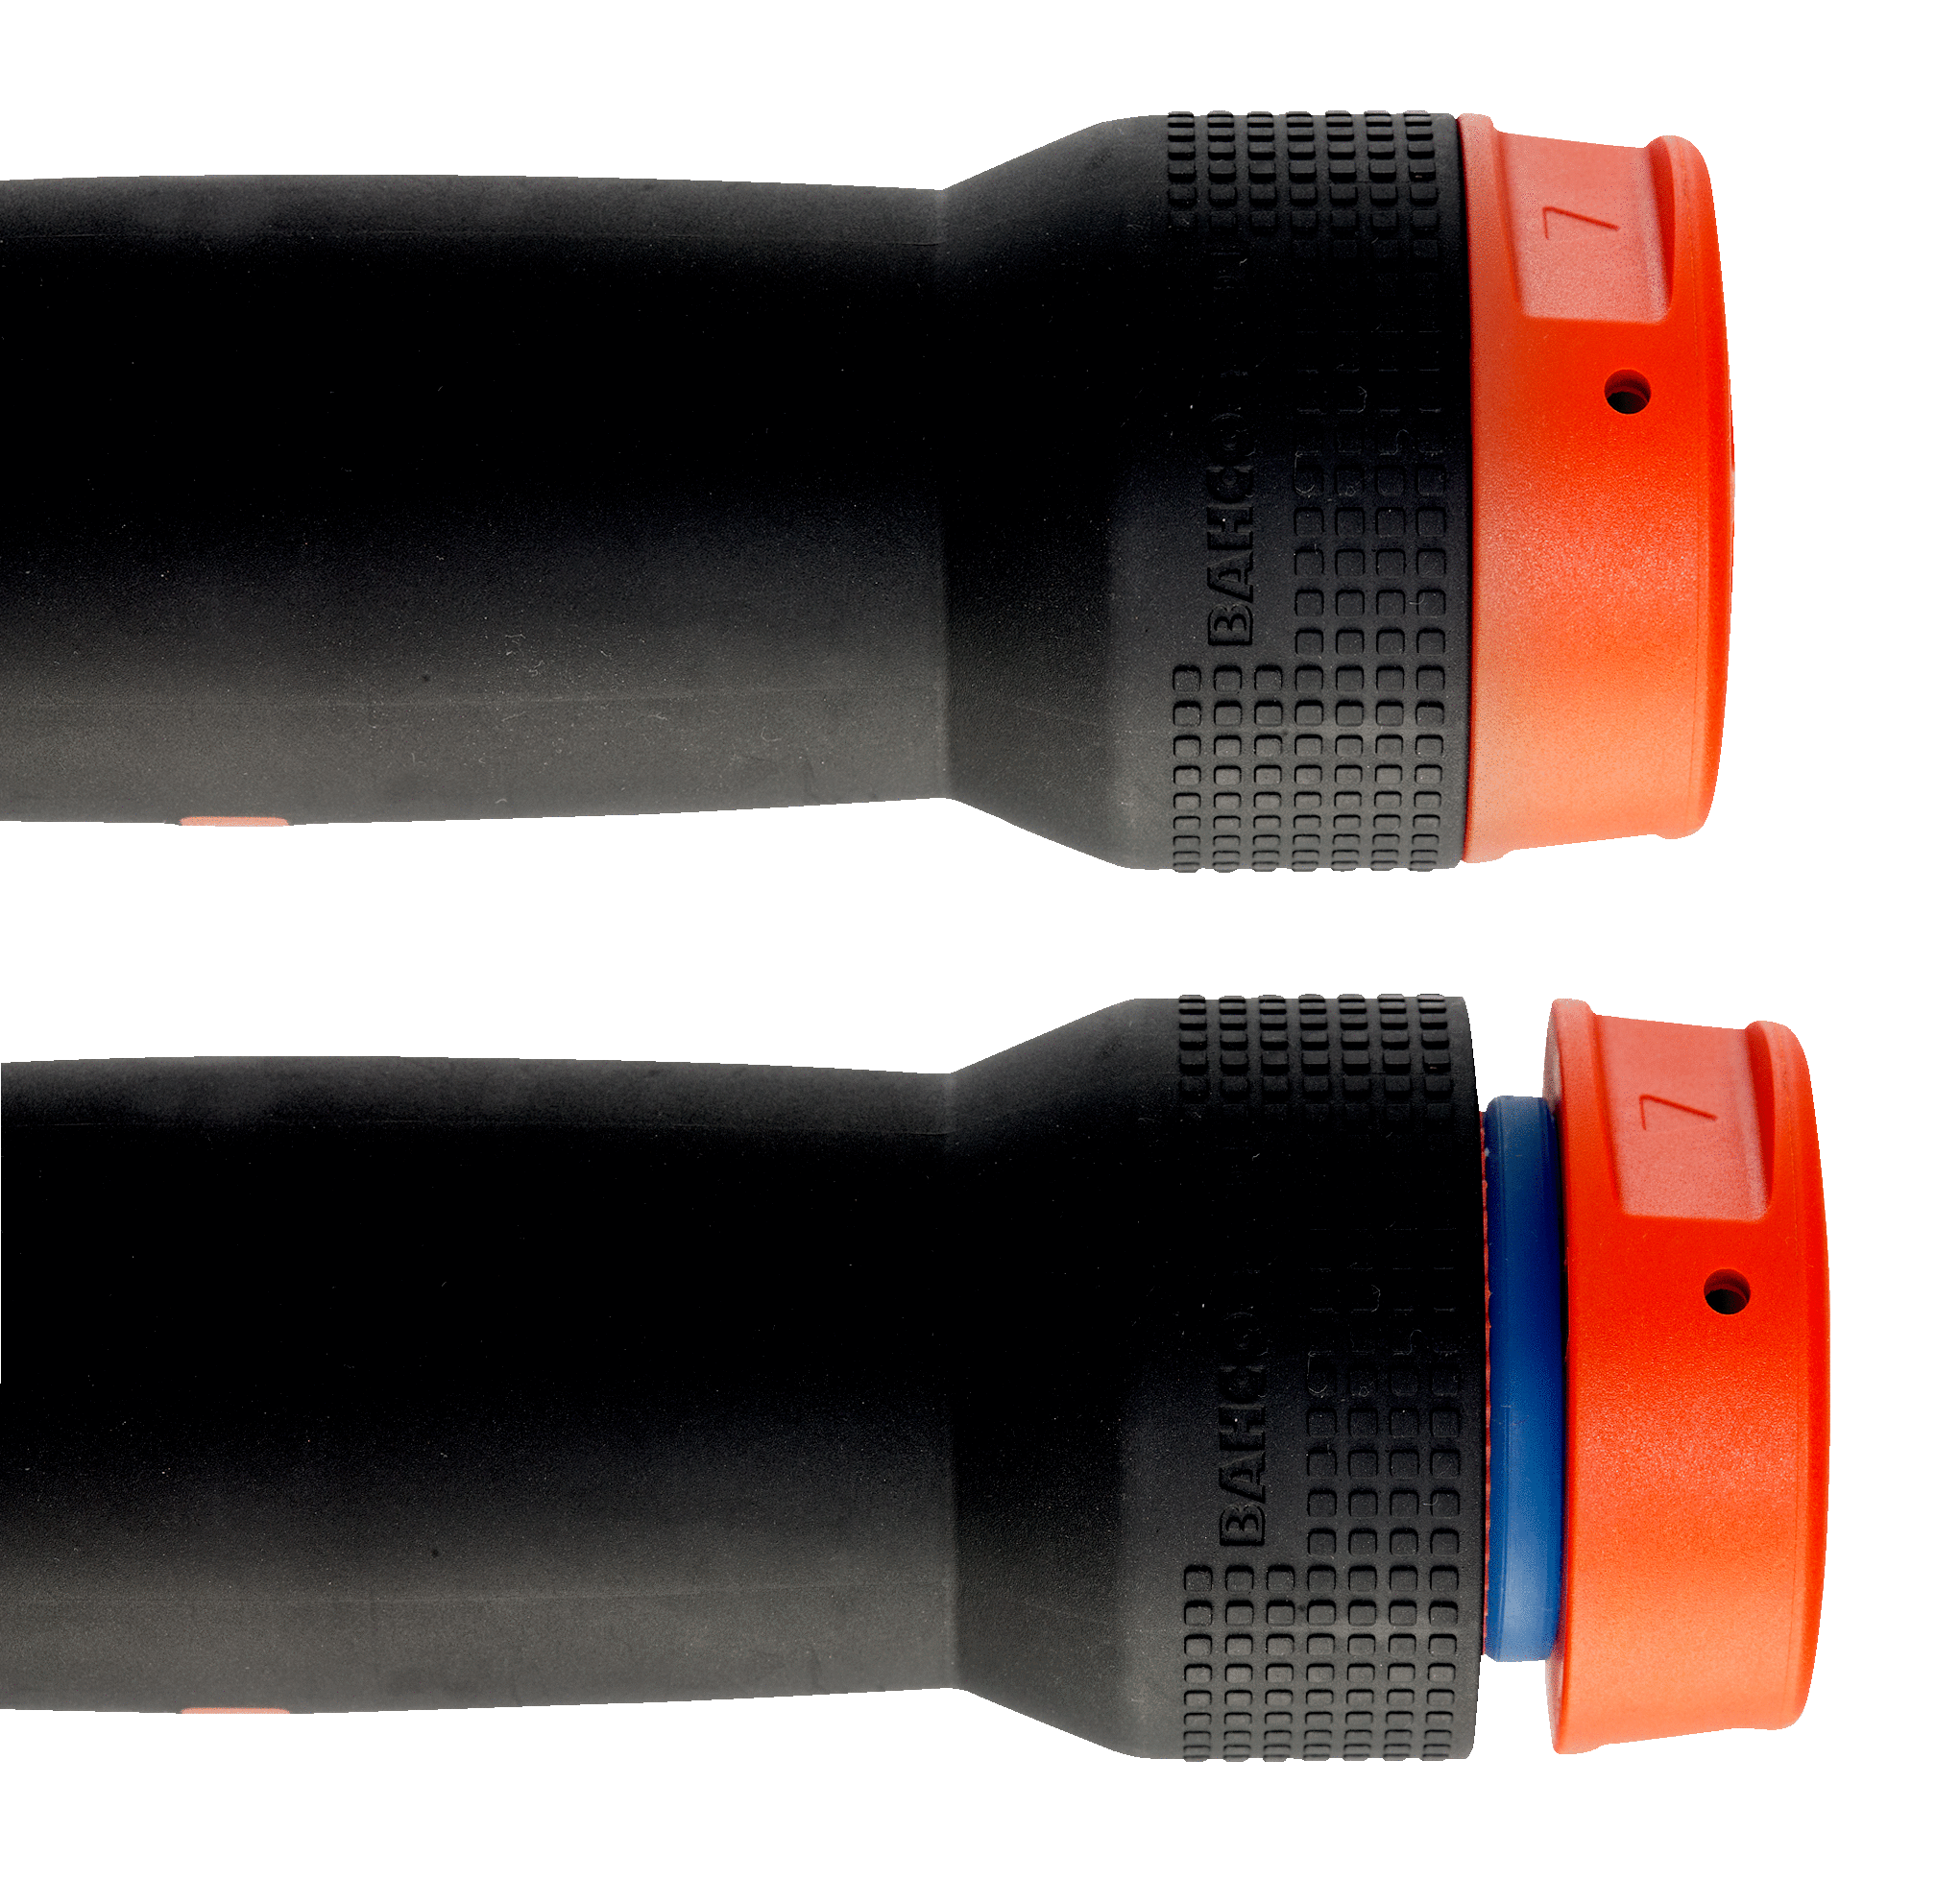 картинка Механический регулируемый щелчковый динамометрический ключ с оконной шкалой и фиксированной реверсивной головкой BAHCO 74WR-15/74WR-25 от магазина "Элит-инструмент"